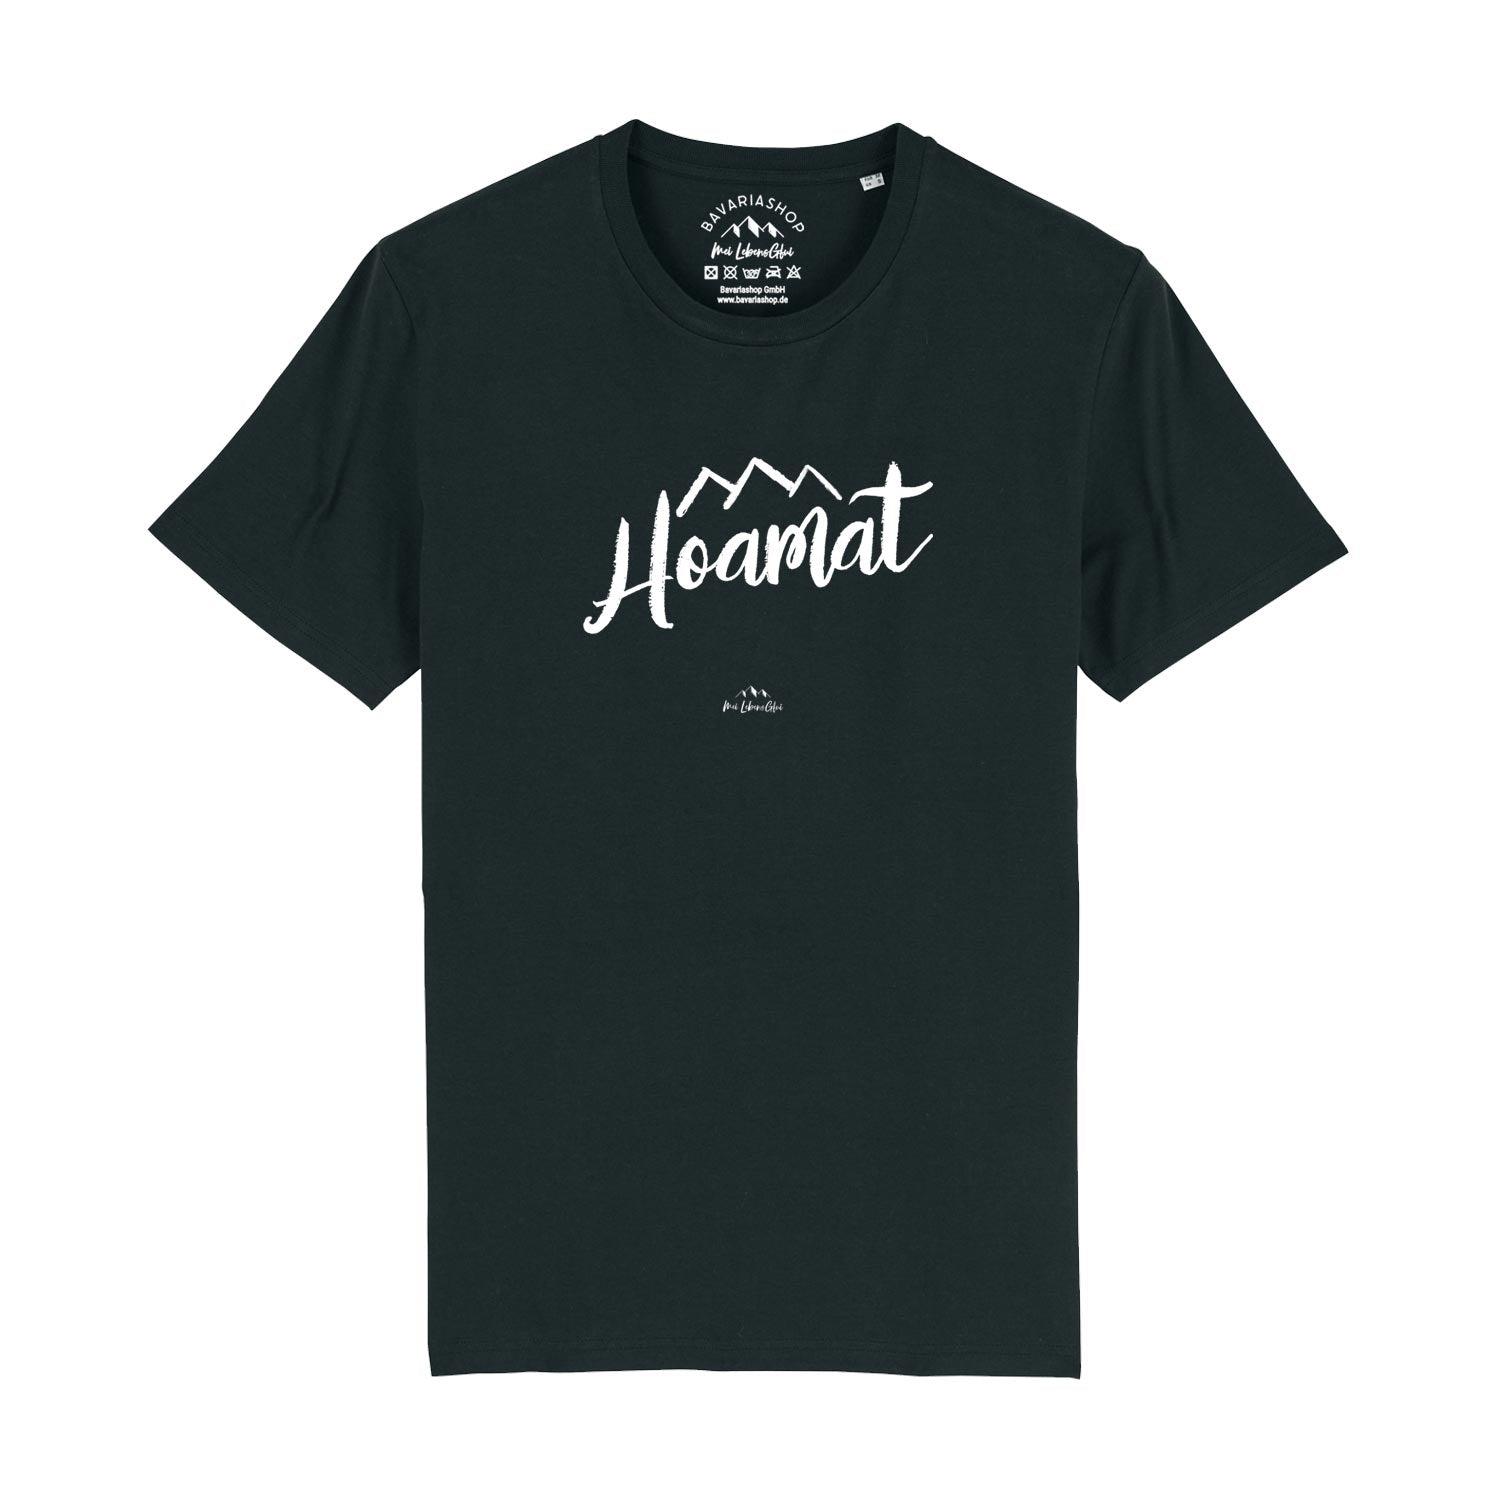 Herren T-Shirt "Hoamat" - bavariashop - mei LebensGfui